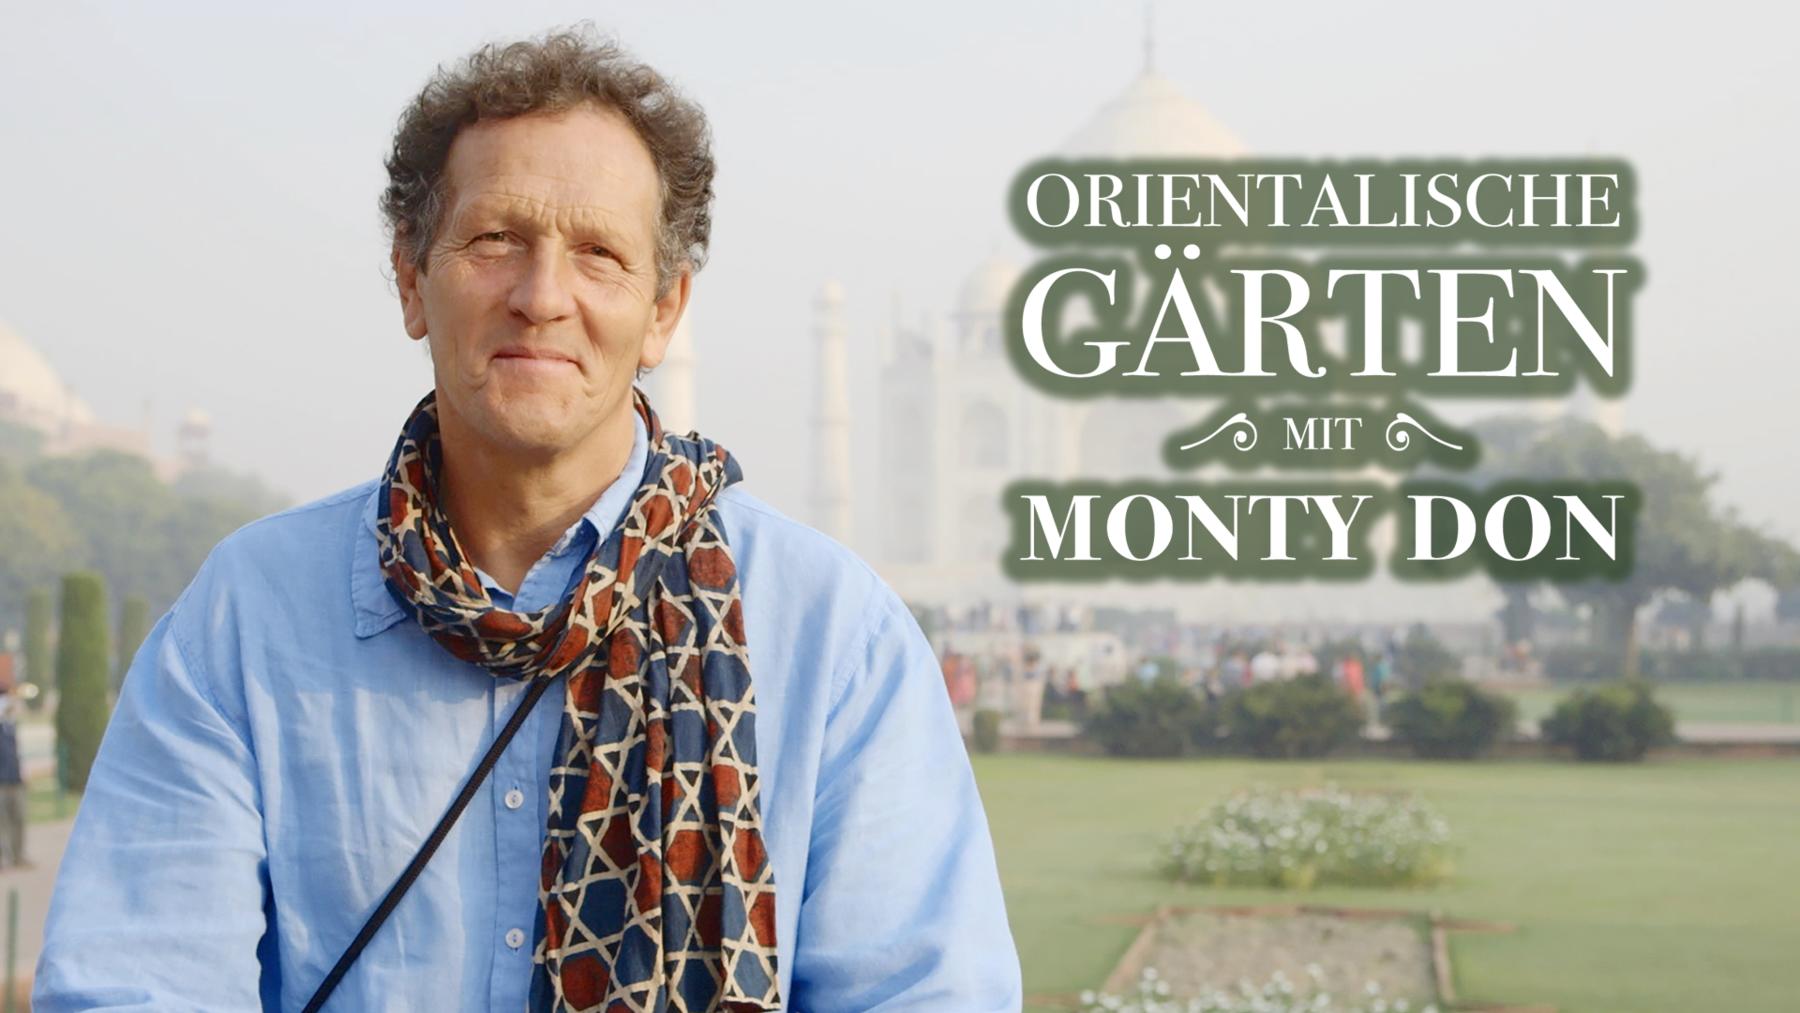 Orientalische Gärten mit Monty Don